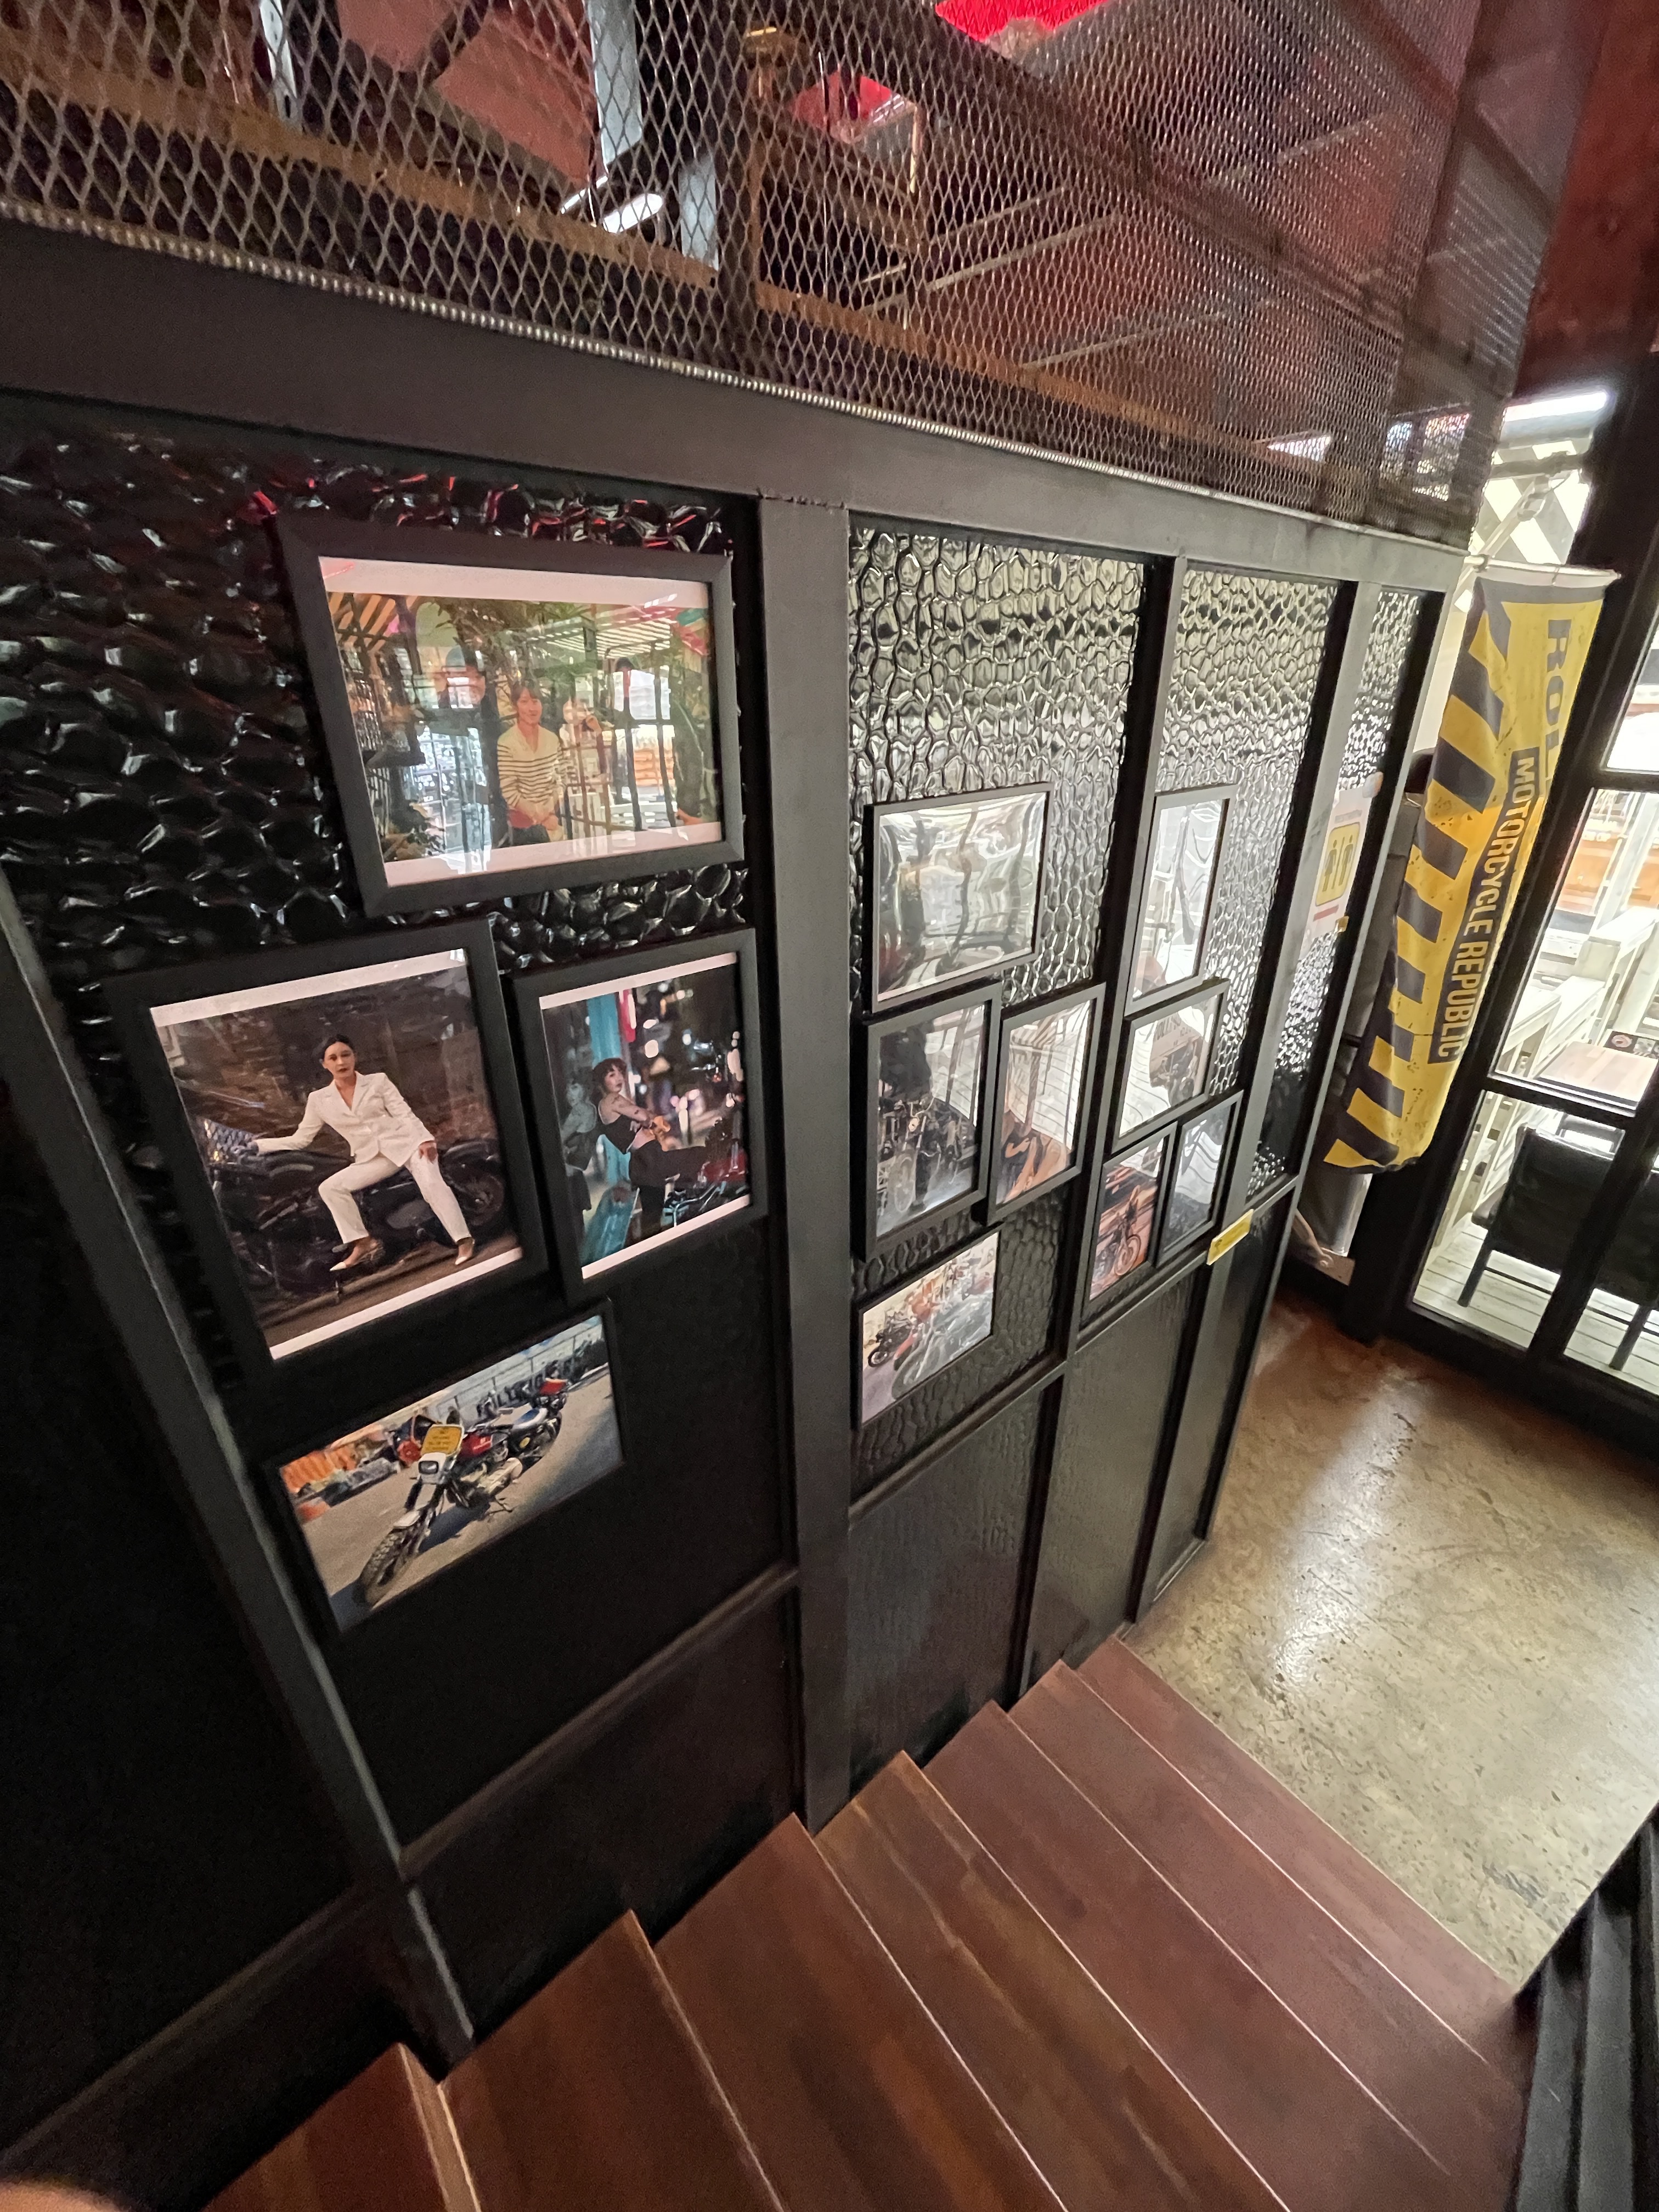 롤링트라이브 카페 내부의 2층 계단과 사진들